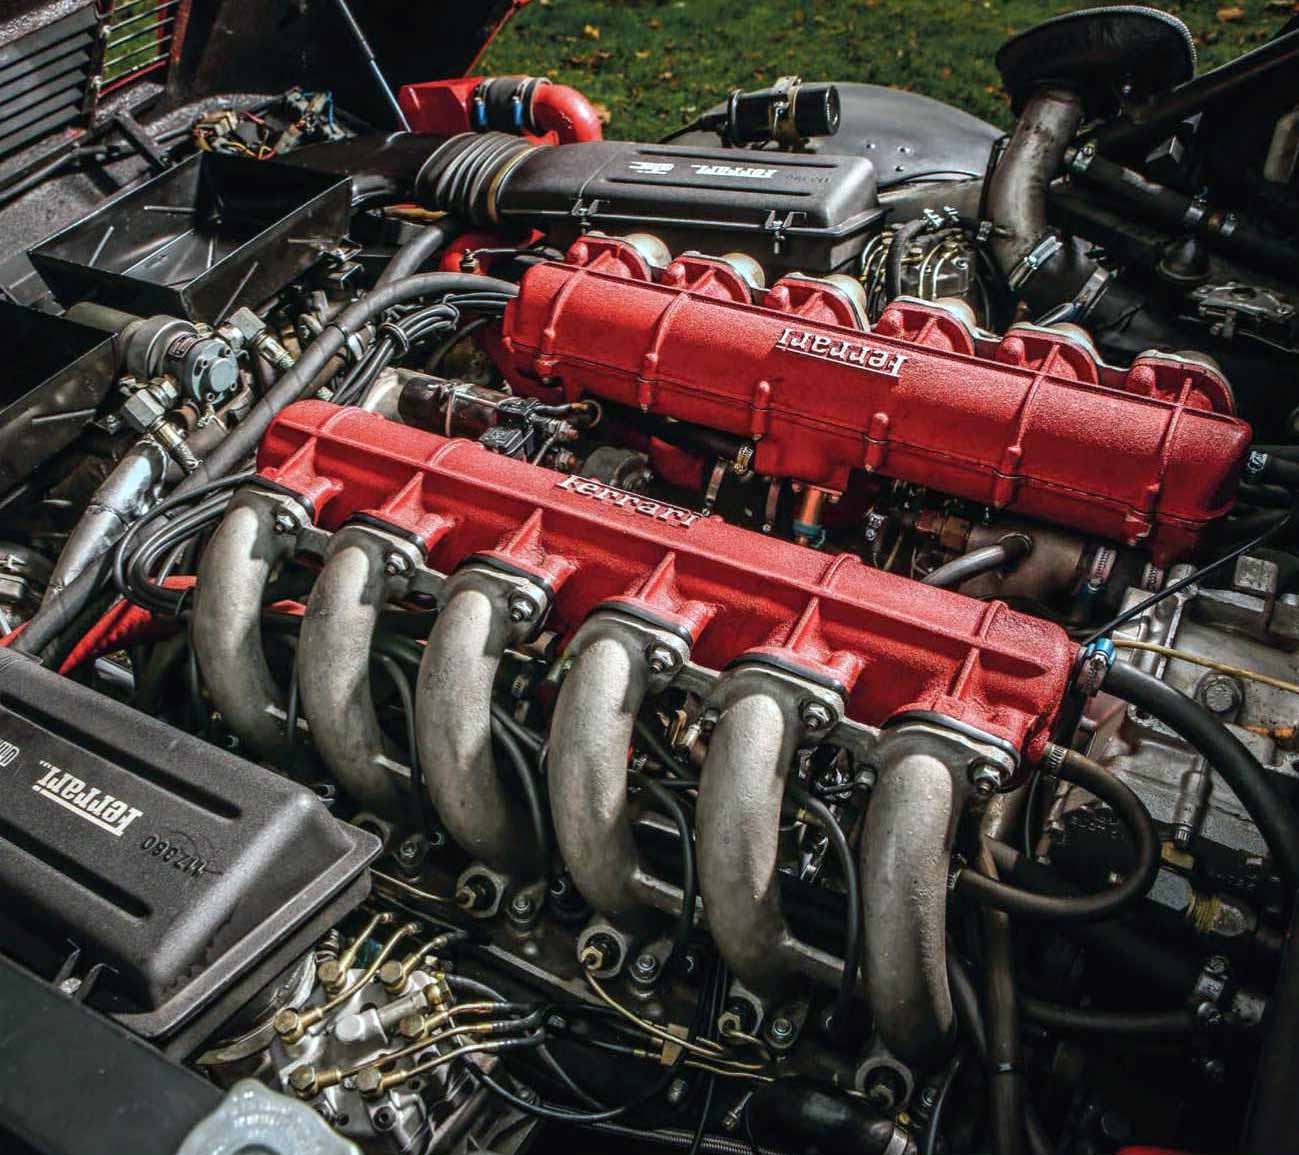 Koenig’s 635bhp 1982 Ferrari 512 BBi twin-turbo